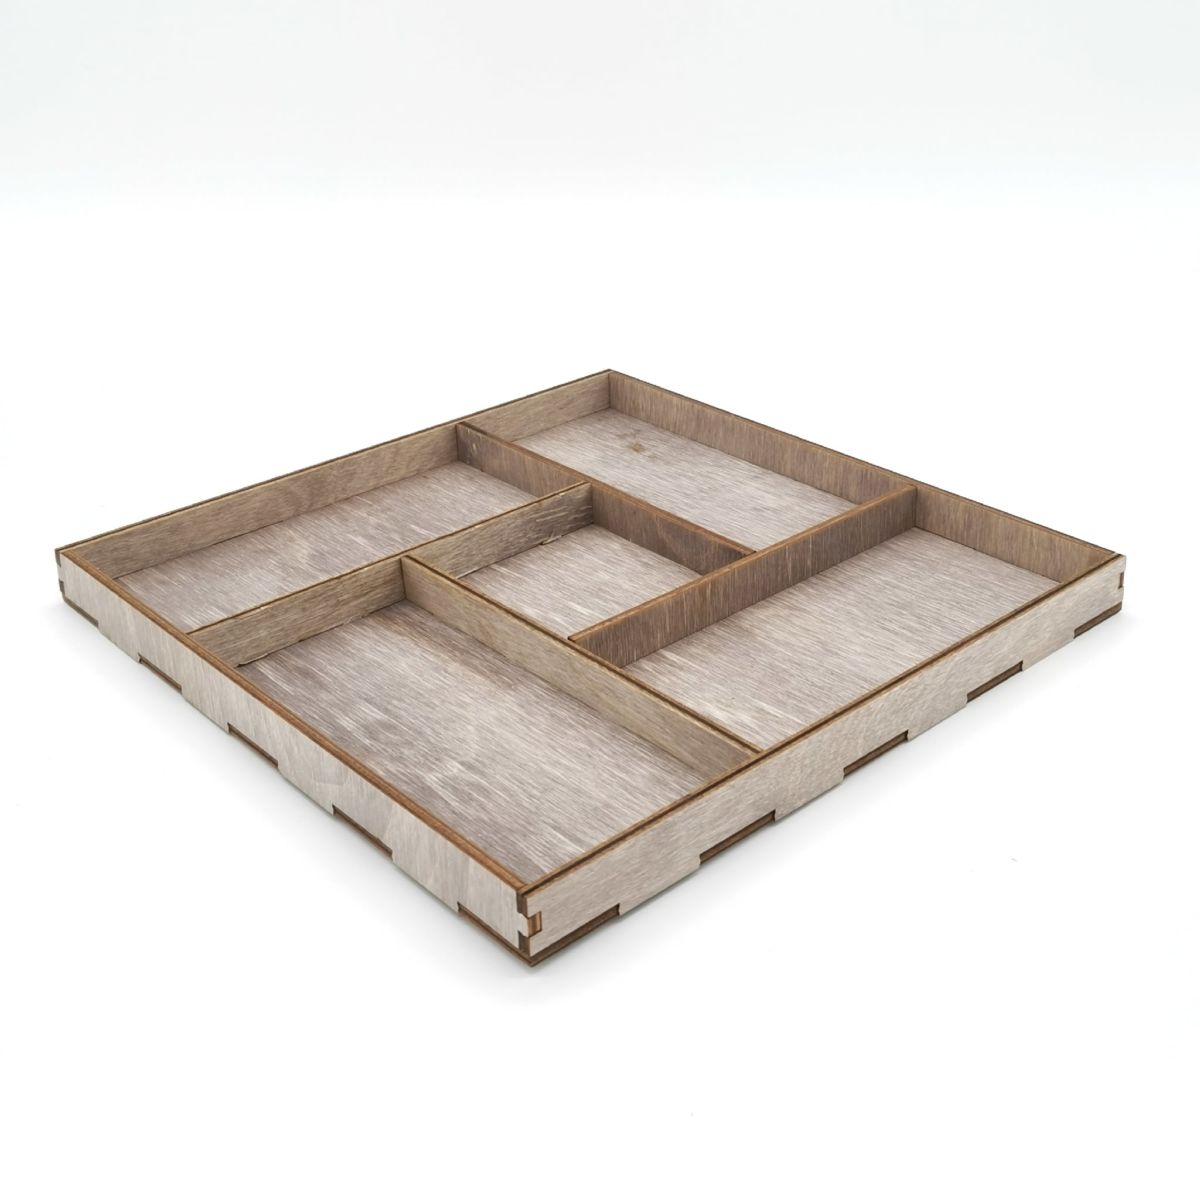 صينية تقديم خشبية مربعة الشكل مقطوعة بالليزر مع خمس حجرات ذات تصميم فريد